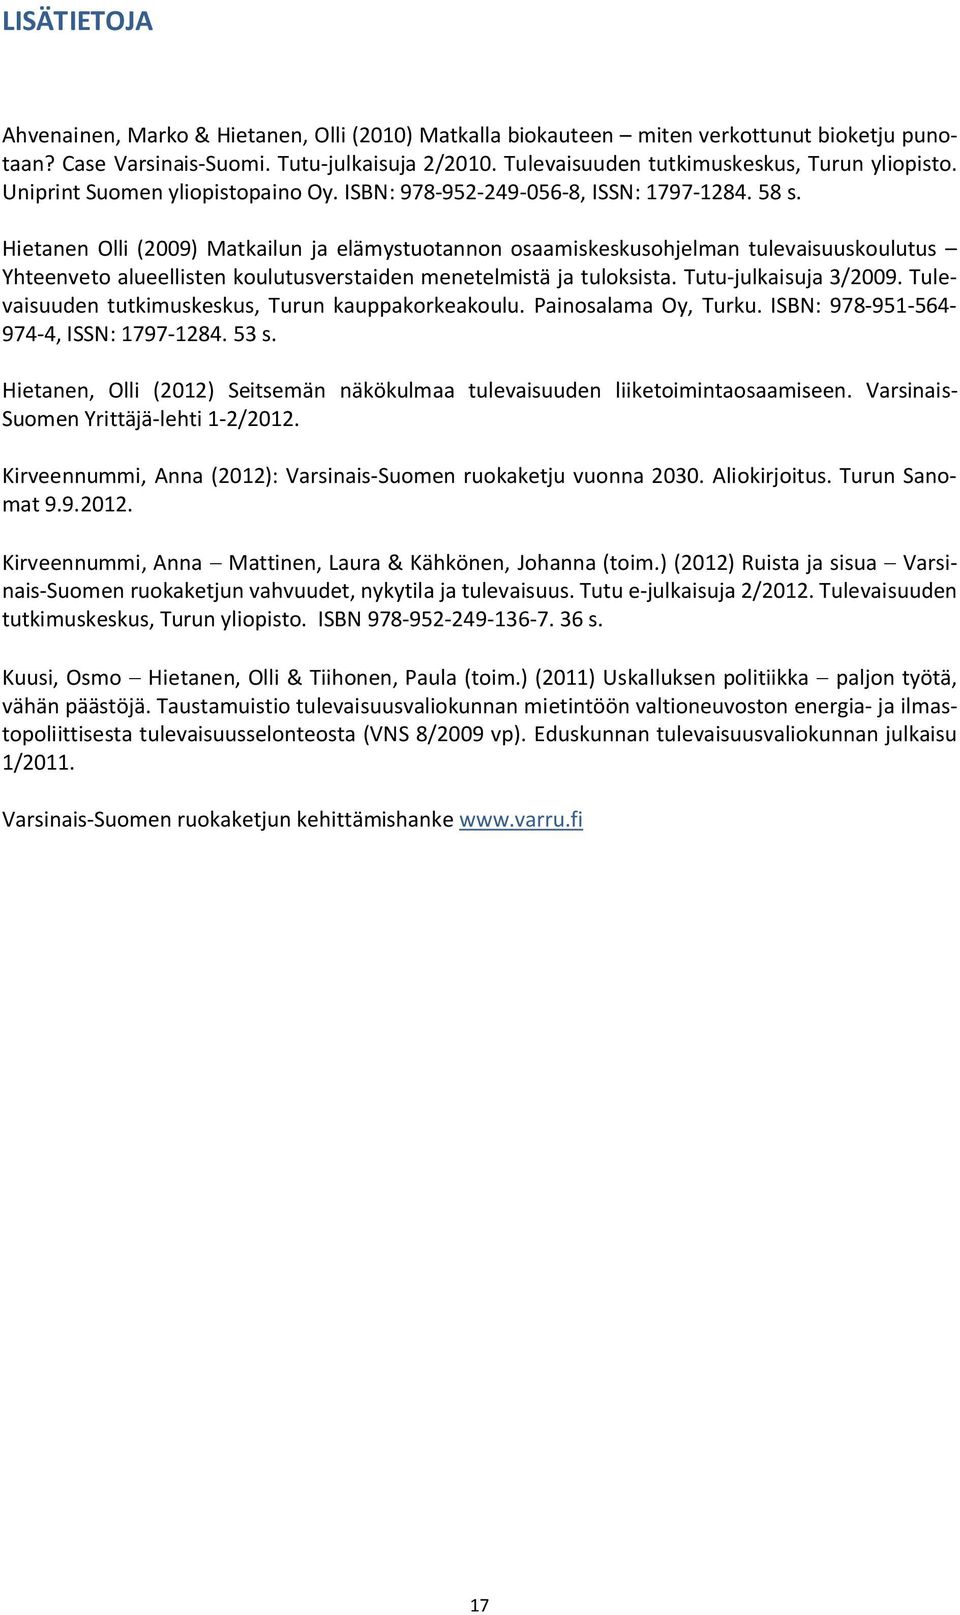 Hietanen Olli (2009) Matkailun ja elämystuotannon osaamiskeskusohjelman tulevaisuuskoulutus Yhteenveto alueellisten koulutusverstaiden menetelmistä ja tuloksista. Tutu-julkaisuja 3/2009.